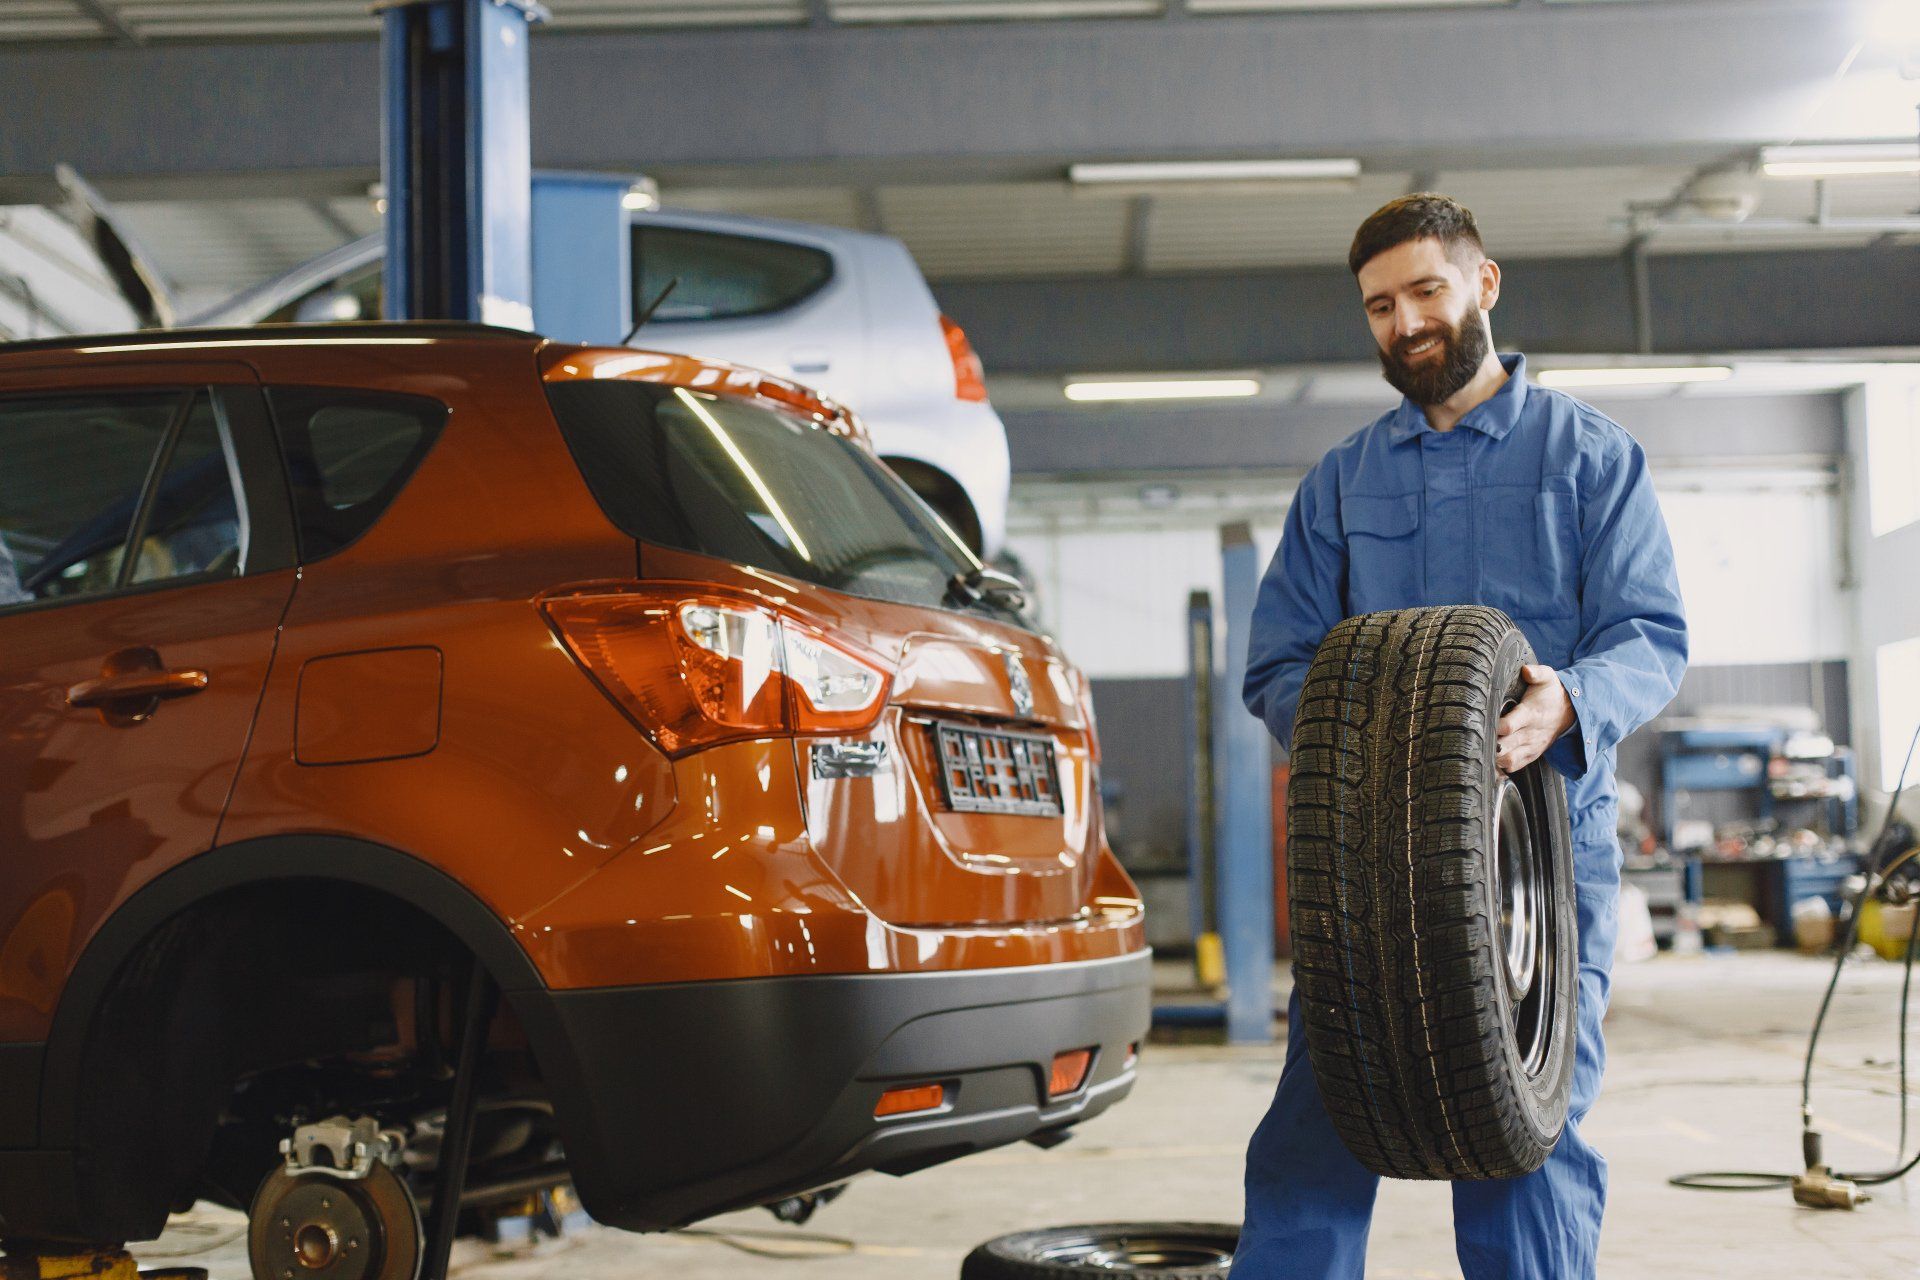 A man is holding a tire in front of a car in a garage.